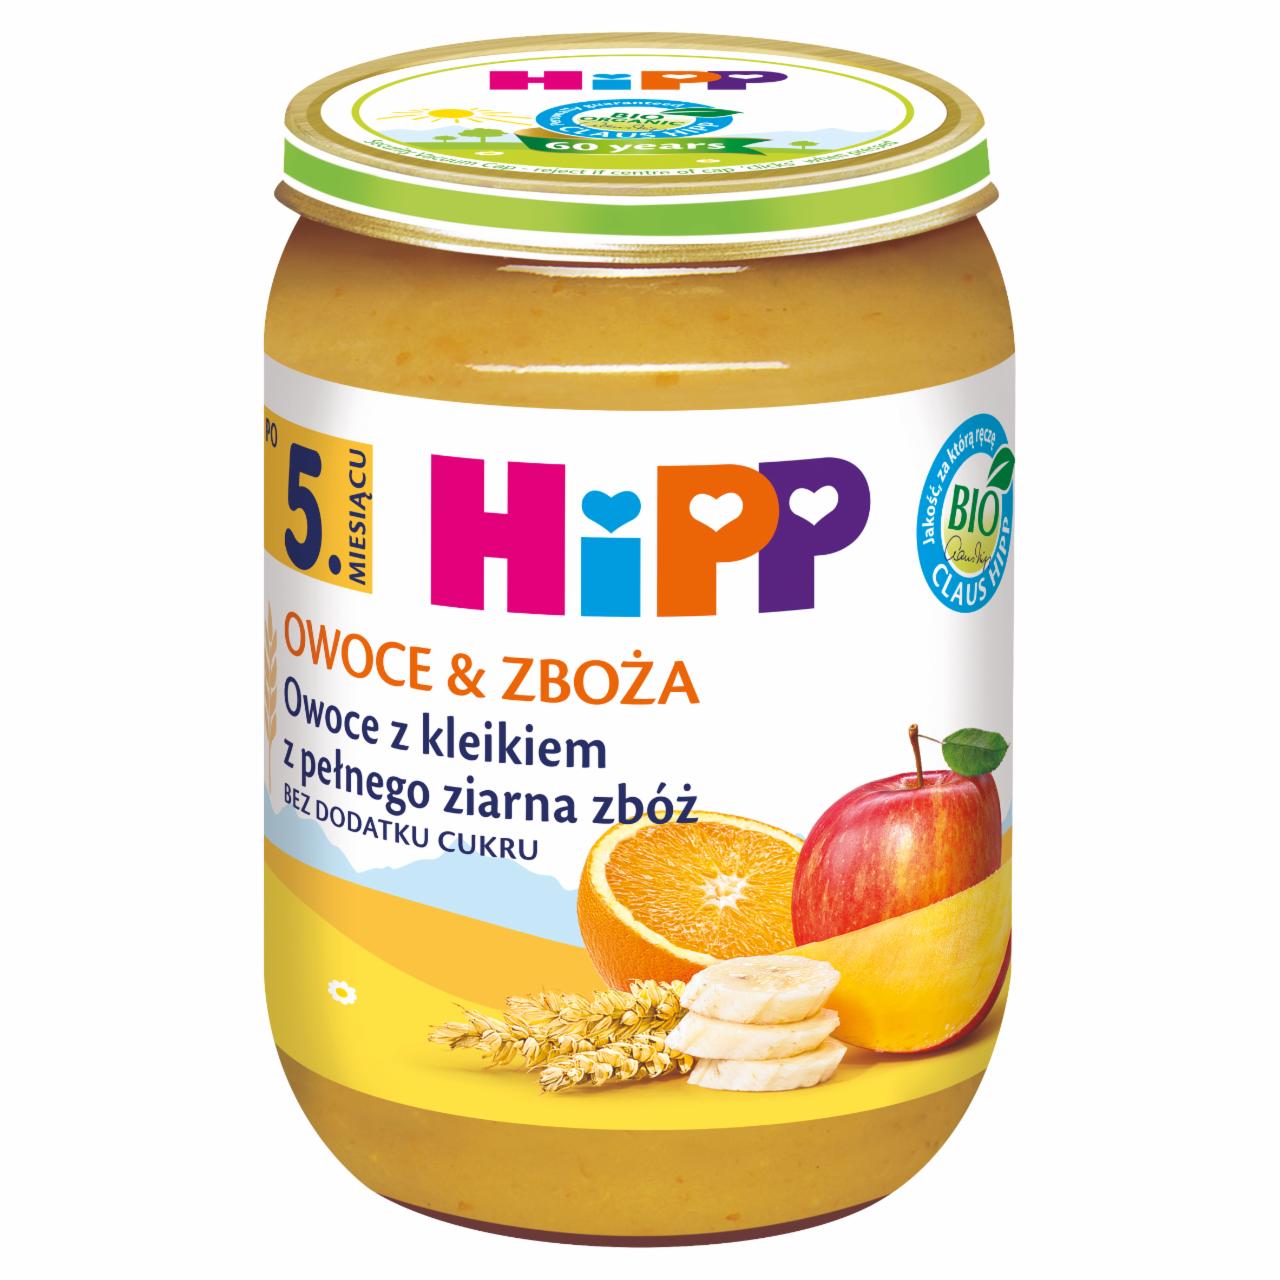 Zdjęcia - HiPP BIO Owoce & Zboża Owoce z kleikiem z pełnego ziarna zbóż po 5. miesiącu 190 g